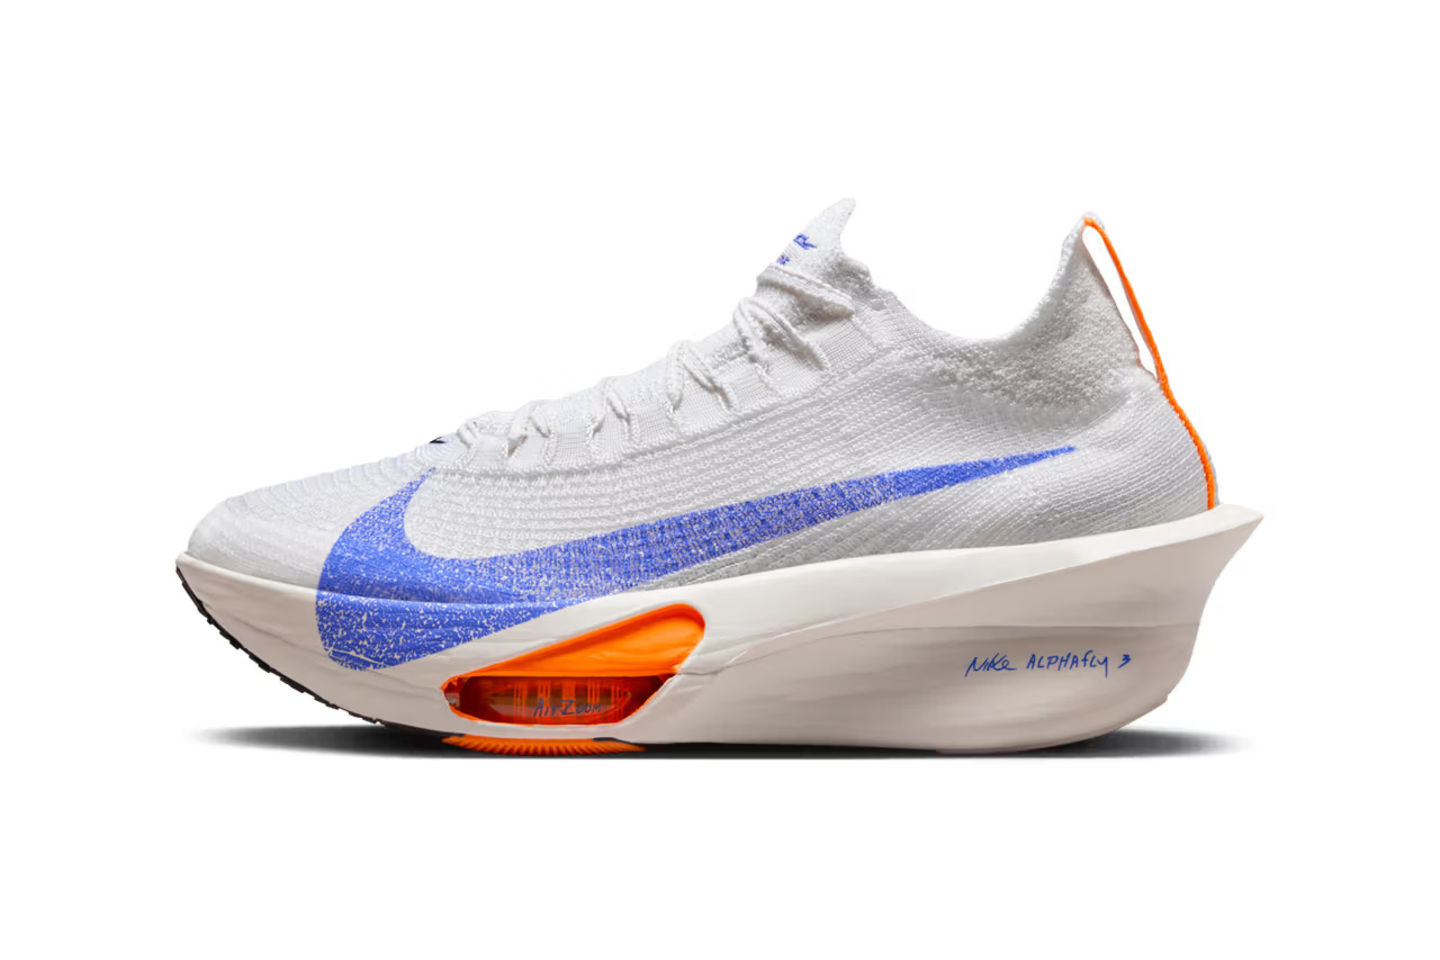 迎接巴黎奥运，Nike 推出旗舰款跑鞋 Alphafly 3s 全新 “Blueprint” 配色